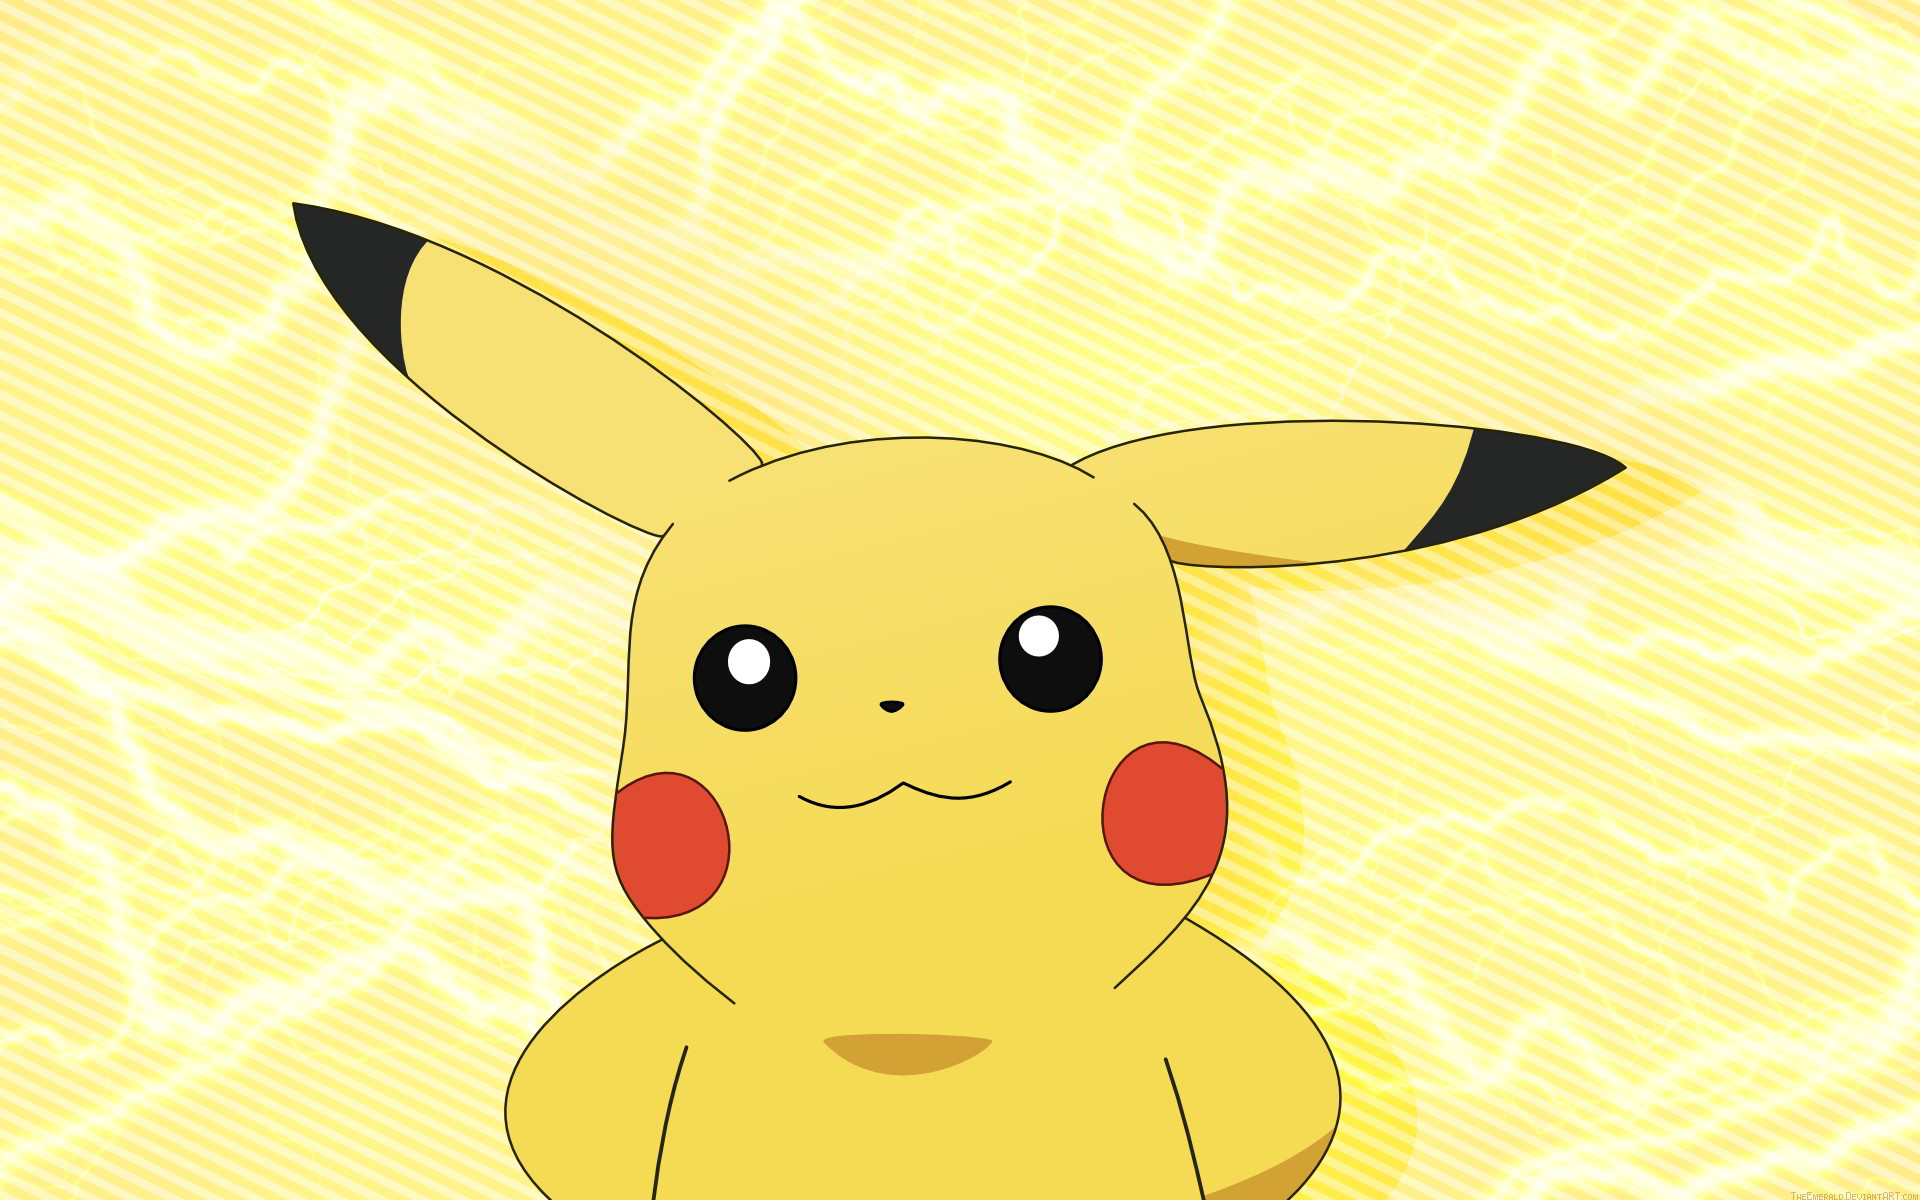 Pikachu đã trở thành biểu tượng của thế giới Pokémon và nổi tiếng đến mức khiến cả nhà không thể bỏ qua! Hãy cùng đón xem hình ảnh những chú Pikachu dễ thương trong bộ sưu tập này!